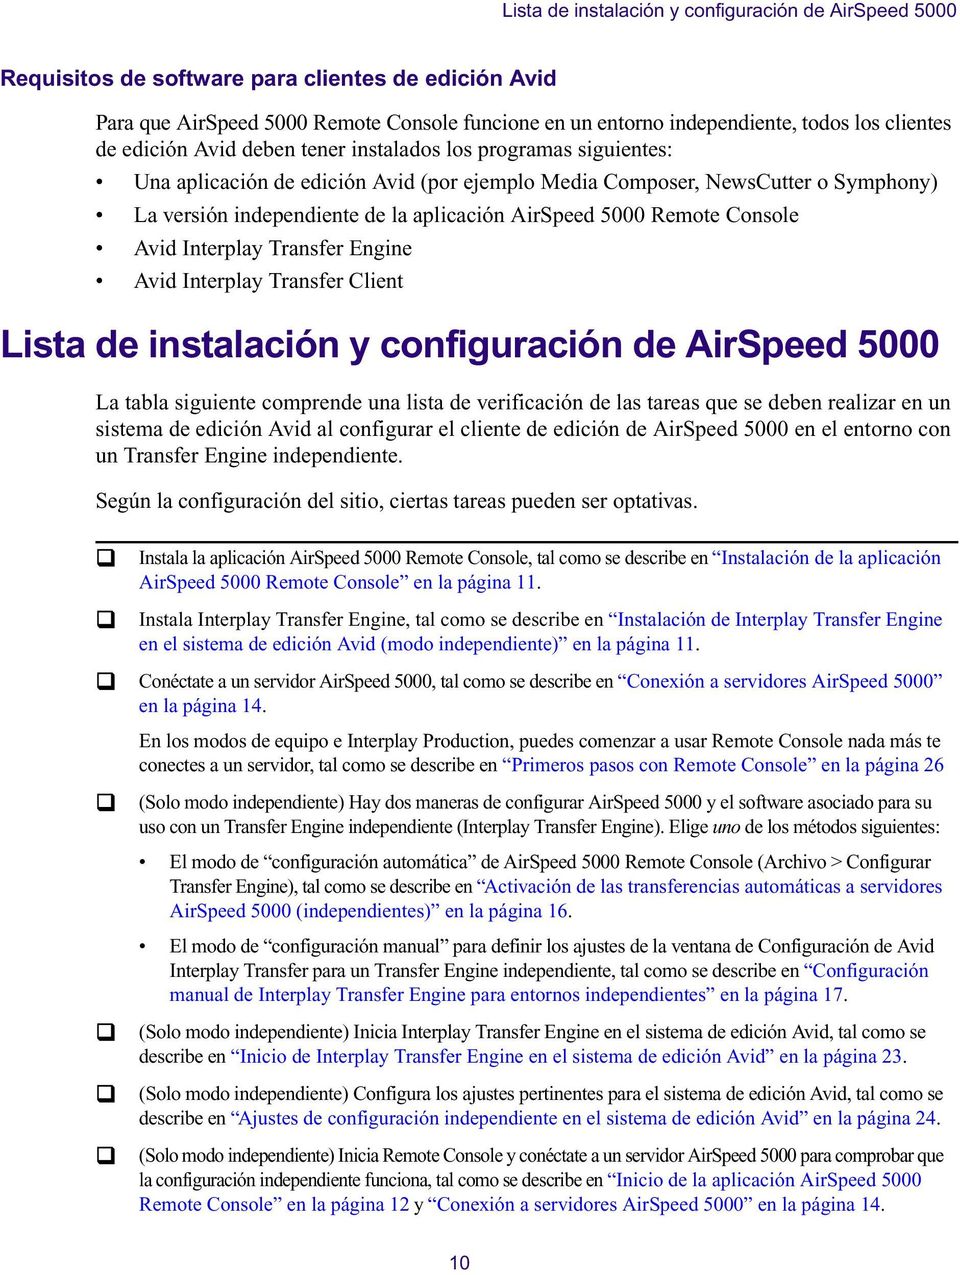 Iterplay Trasfer Egie Avid Iterplay Trasfer Cliet Lista de istalació y cofiguració de AirSpeed 5000 La tabla siguiete comprede ua lista de verificació de las tareas que se debe realizar e u sistema